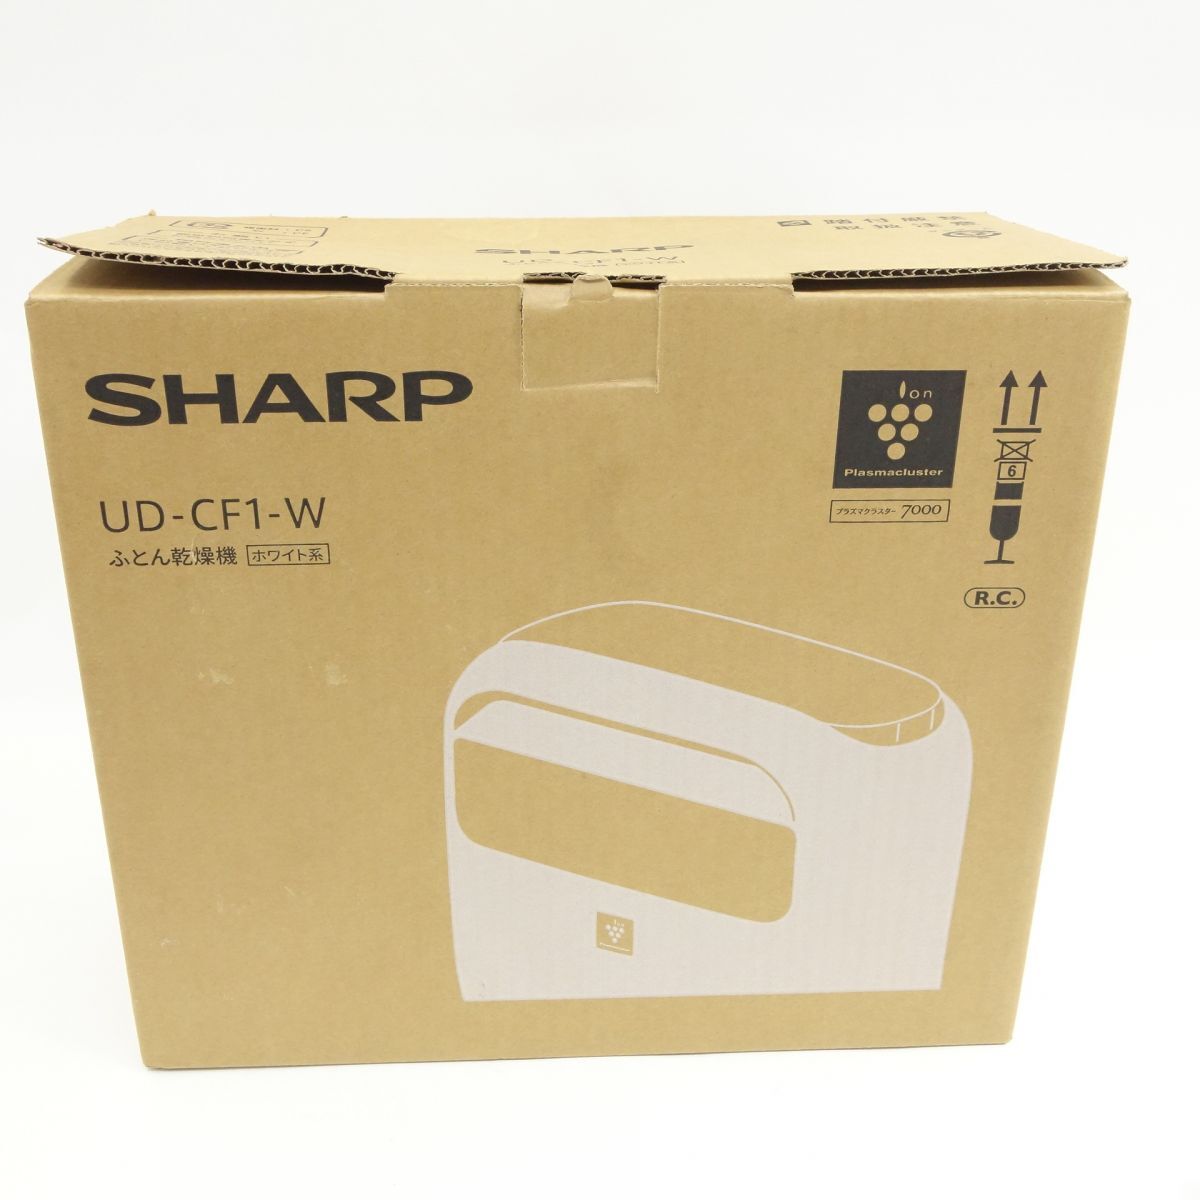 106[ не использовался ]SHARP/ sharp futon сушильная машина UD-CF1 белый клещи дезодорация 2021 год производства 